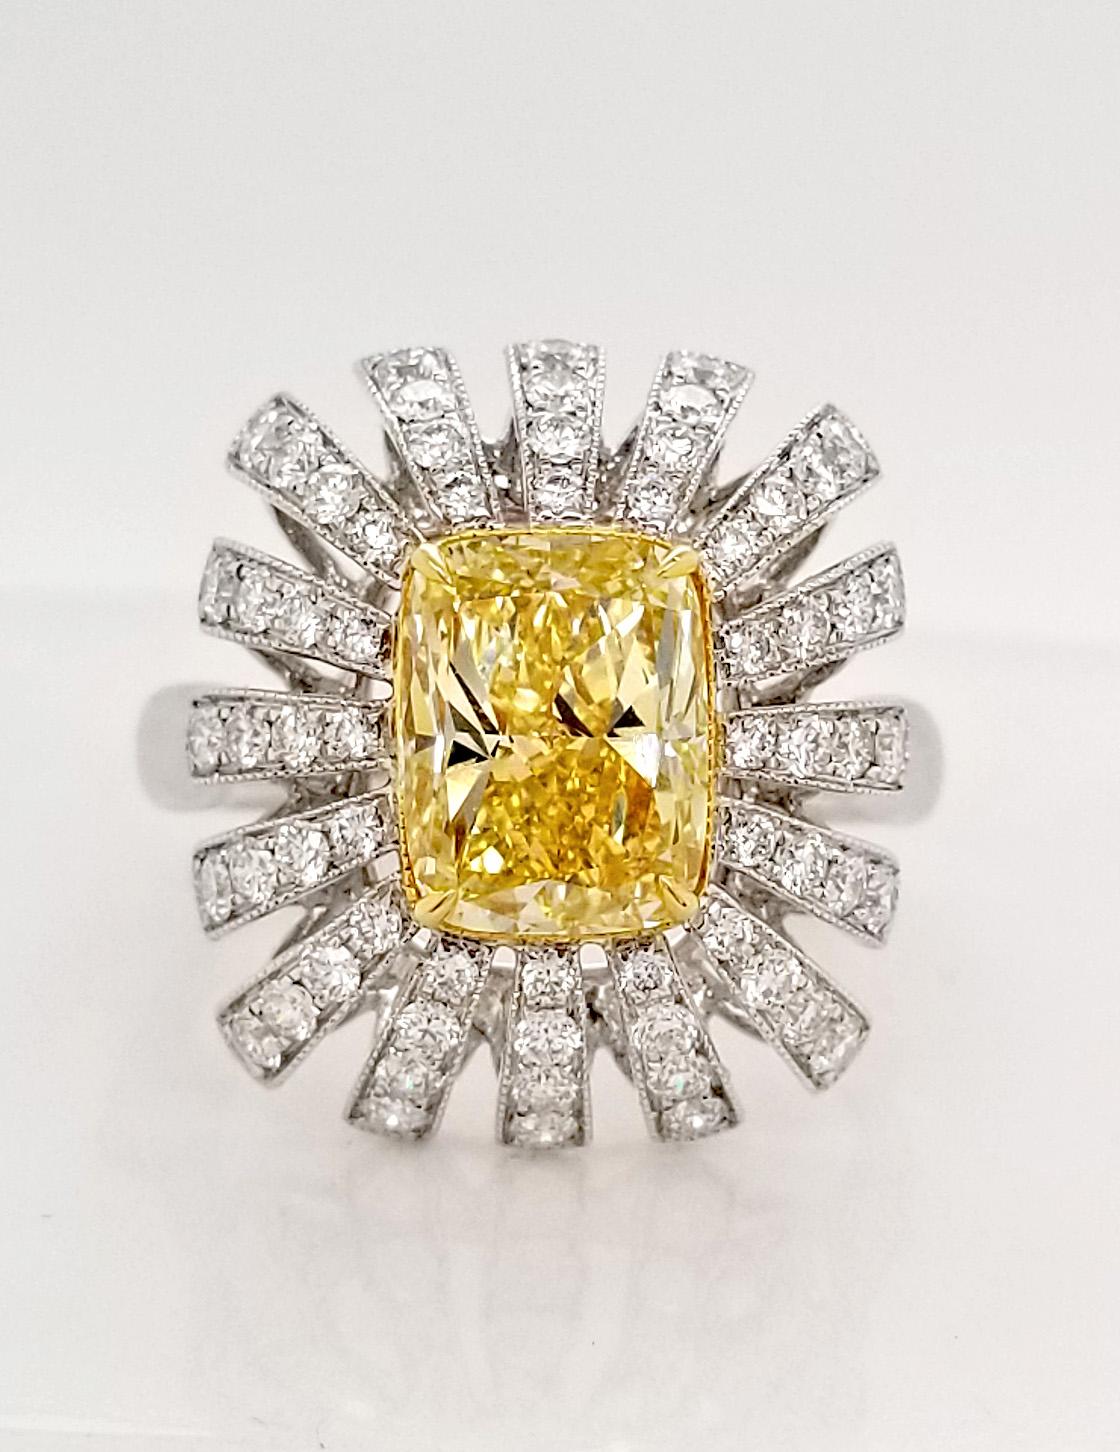 GIA-zertifiziert 2,34 ct. Fantasievoller gelber Verlobungs- oder Cocktailring mit Kissenschliff von Scarselli. Einzigartiger 2,34-karätiger Ring mit einem GIA-zertifizierten Fancy Intense Yellow Diamond VS2 auf einem 18-karätigen Weißgoldband. Die